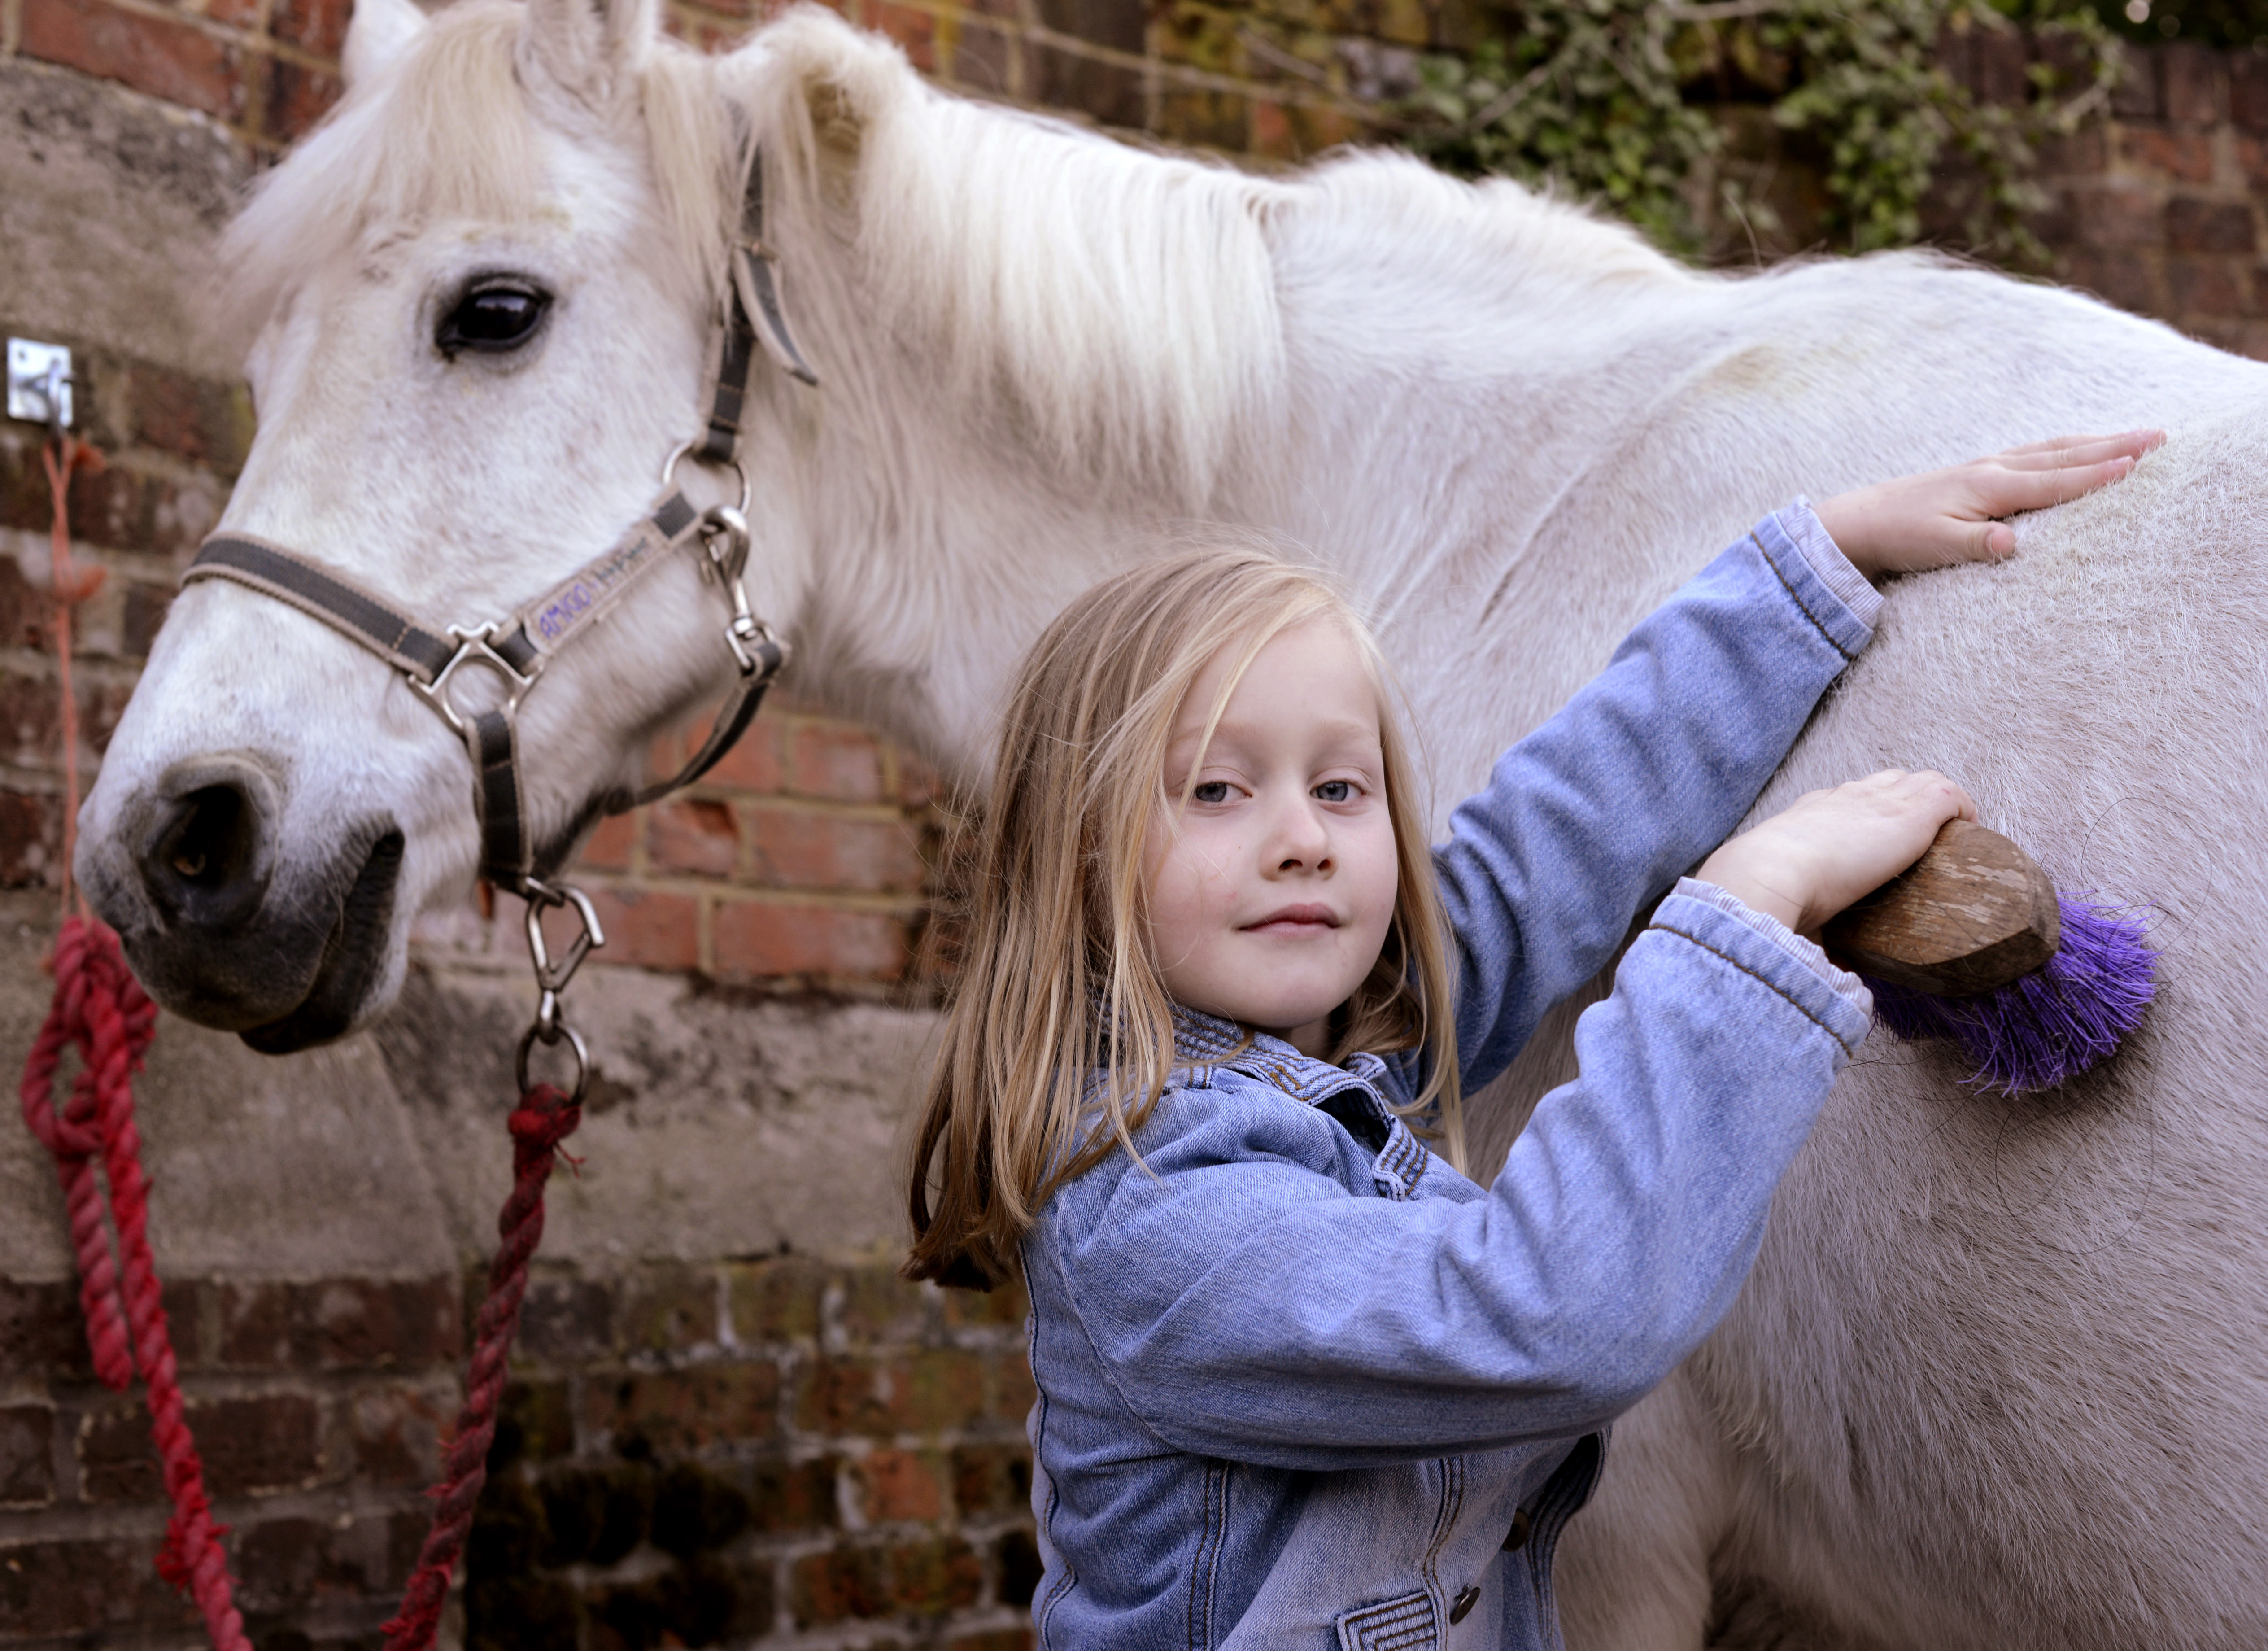 Sara with a pony